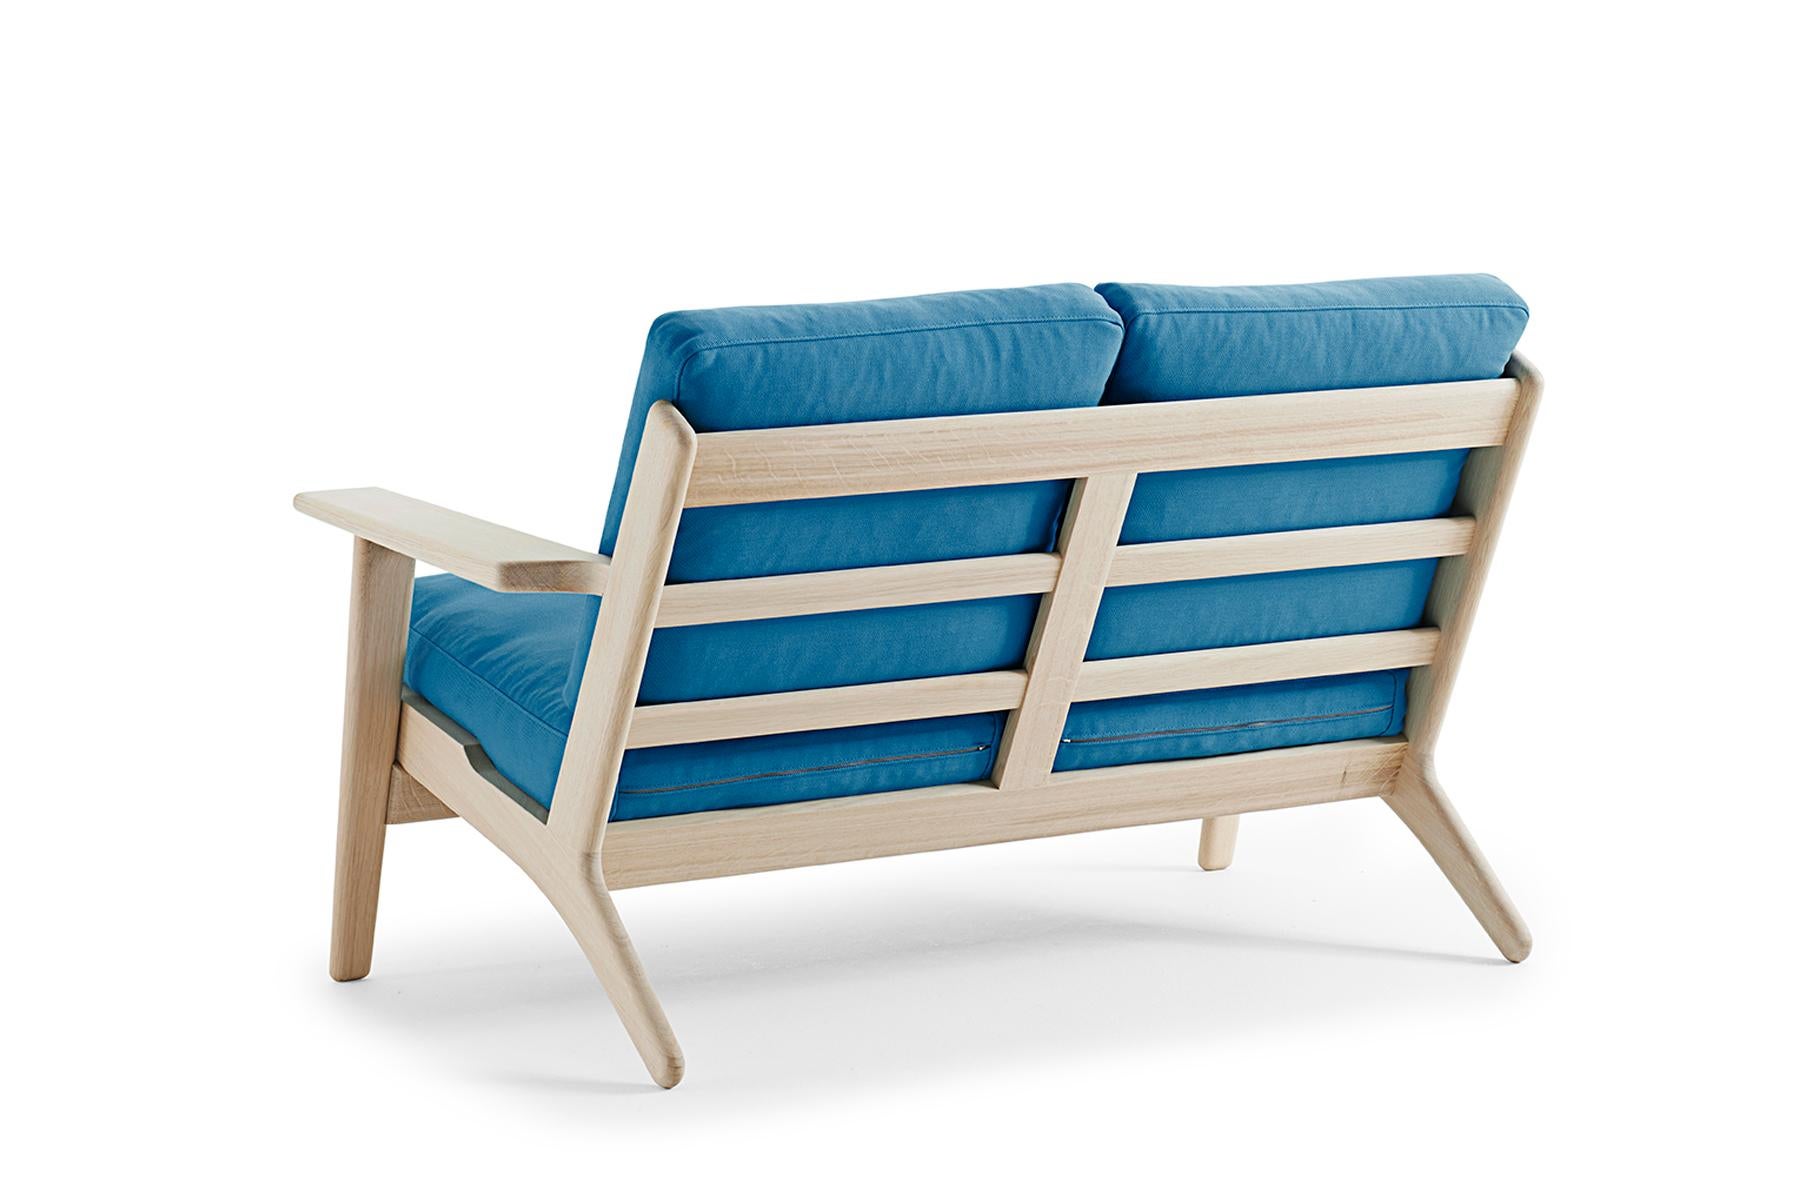 Conçue par Hans Wegner pour Getama en 1953, la GE 290/2 est la version biplace de la chaise longue 290, l'une des œuvres classiques et les plus appréciées de l'architecte. Les grands bras à palettes sculptés mettent en valeur la beauté naturelle du